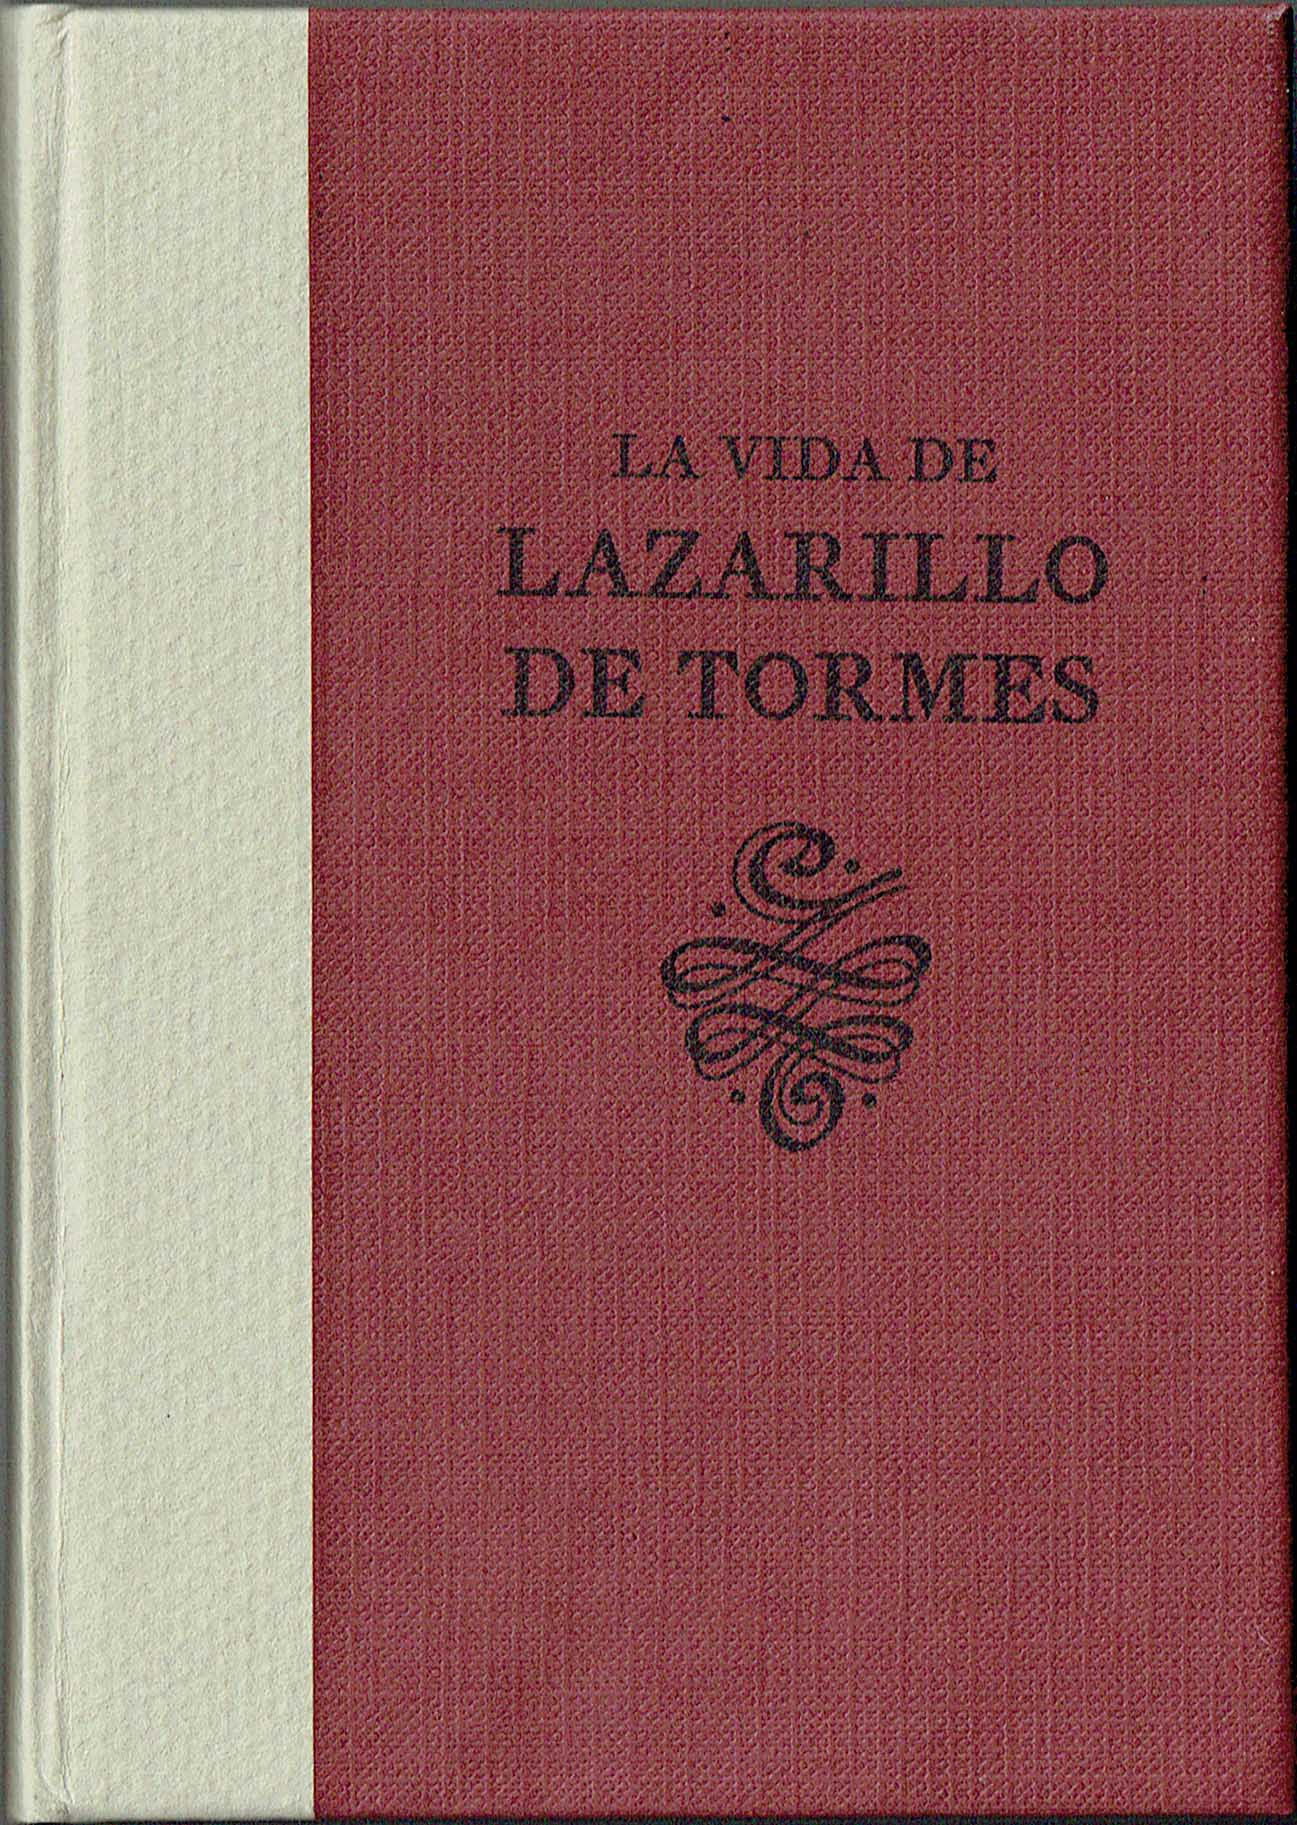 lazarillo2